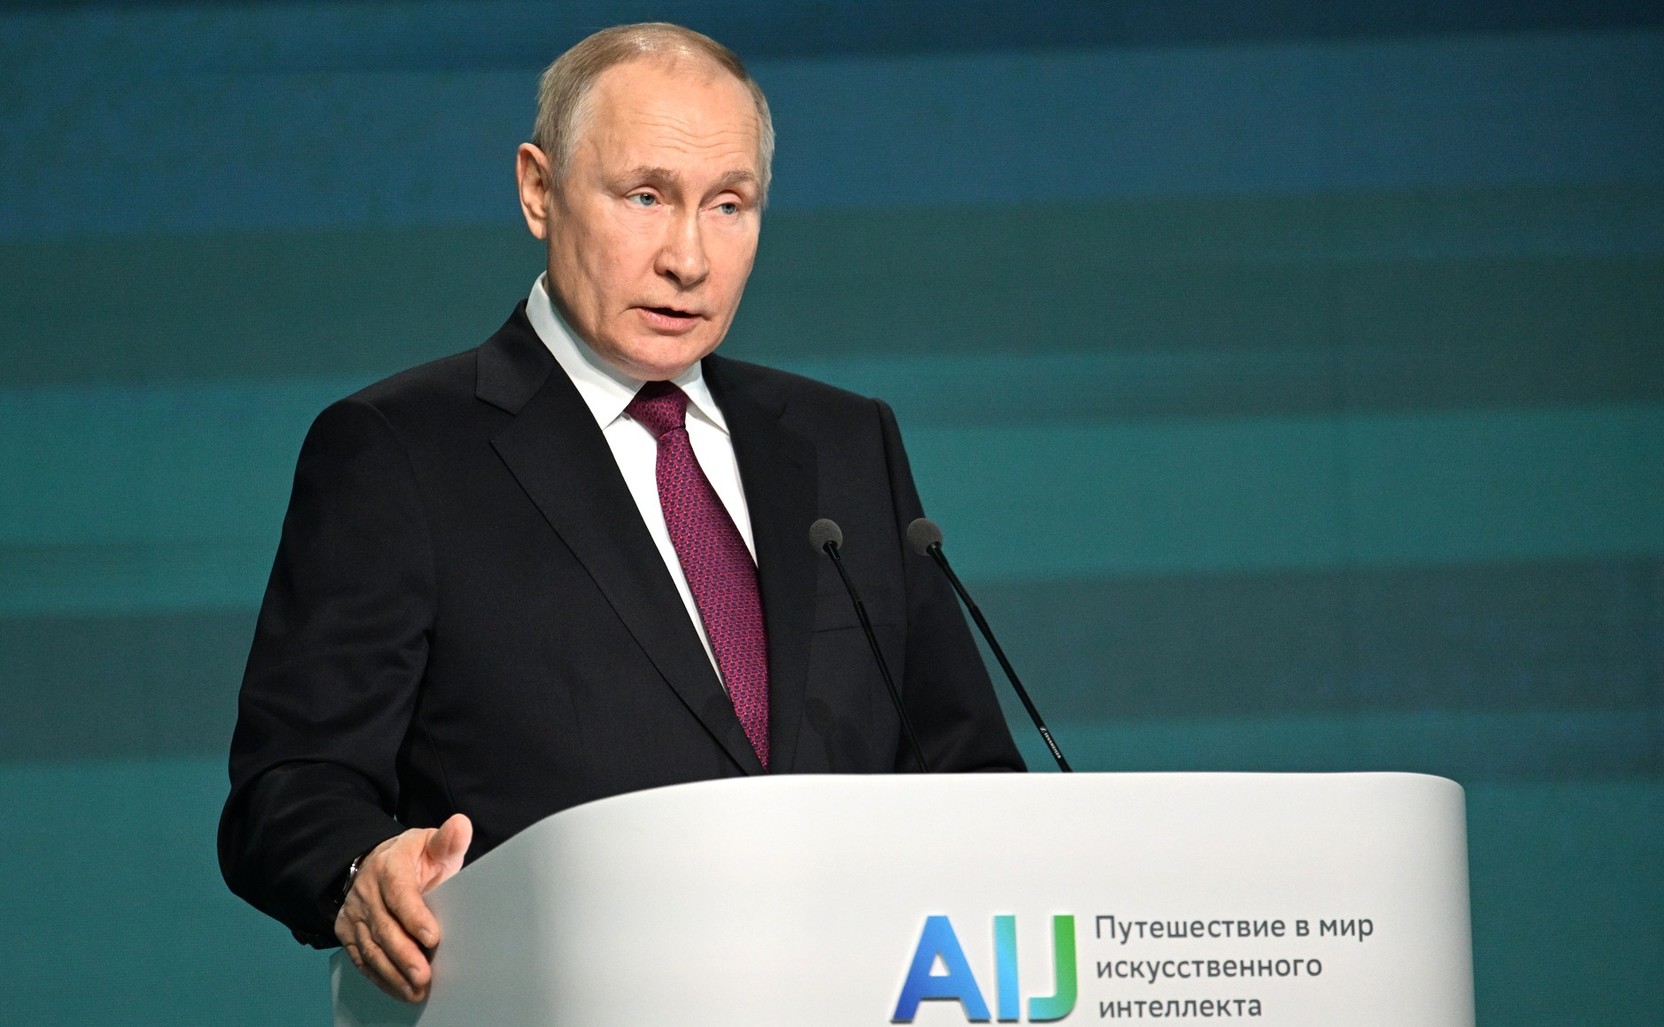 Путин: при внедрении российских IT-решений бизнес получит налоговые льготы